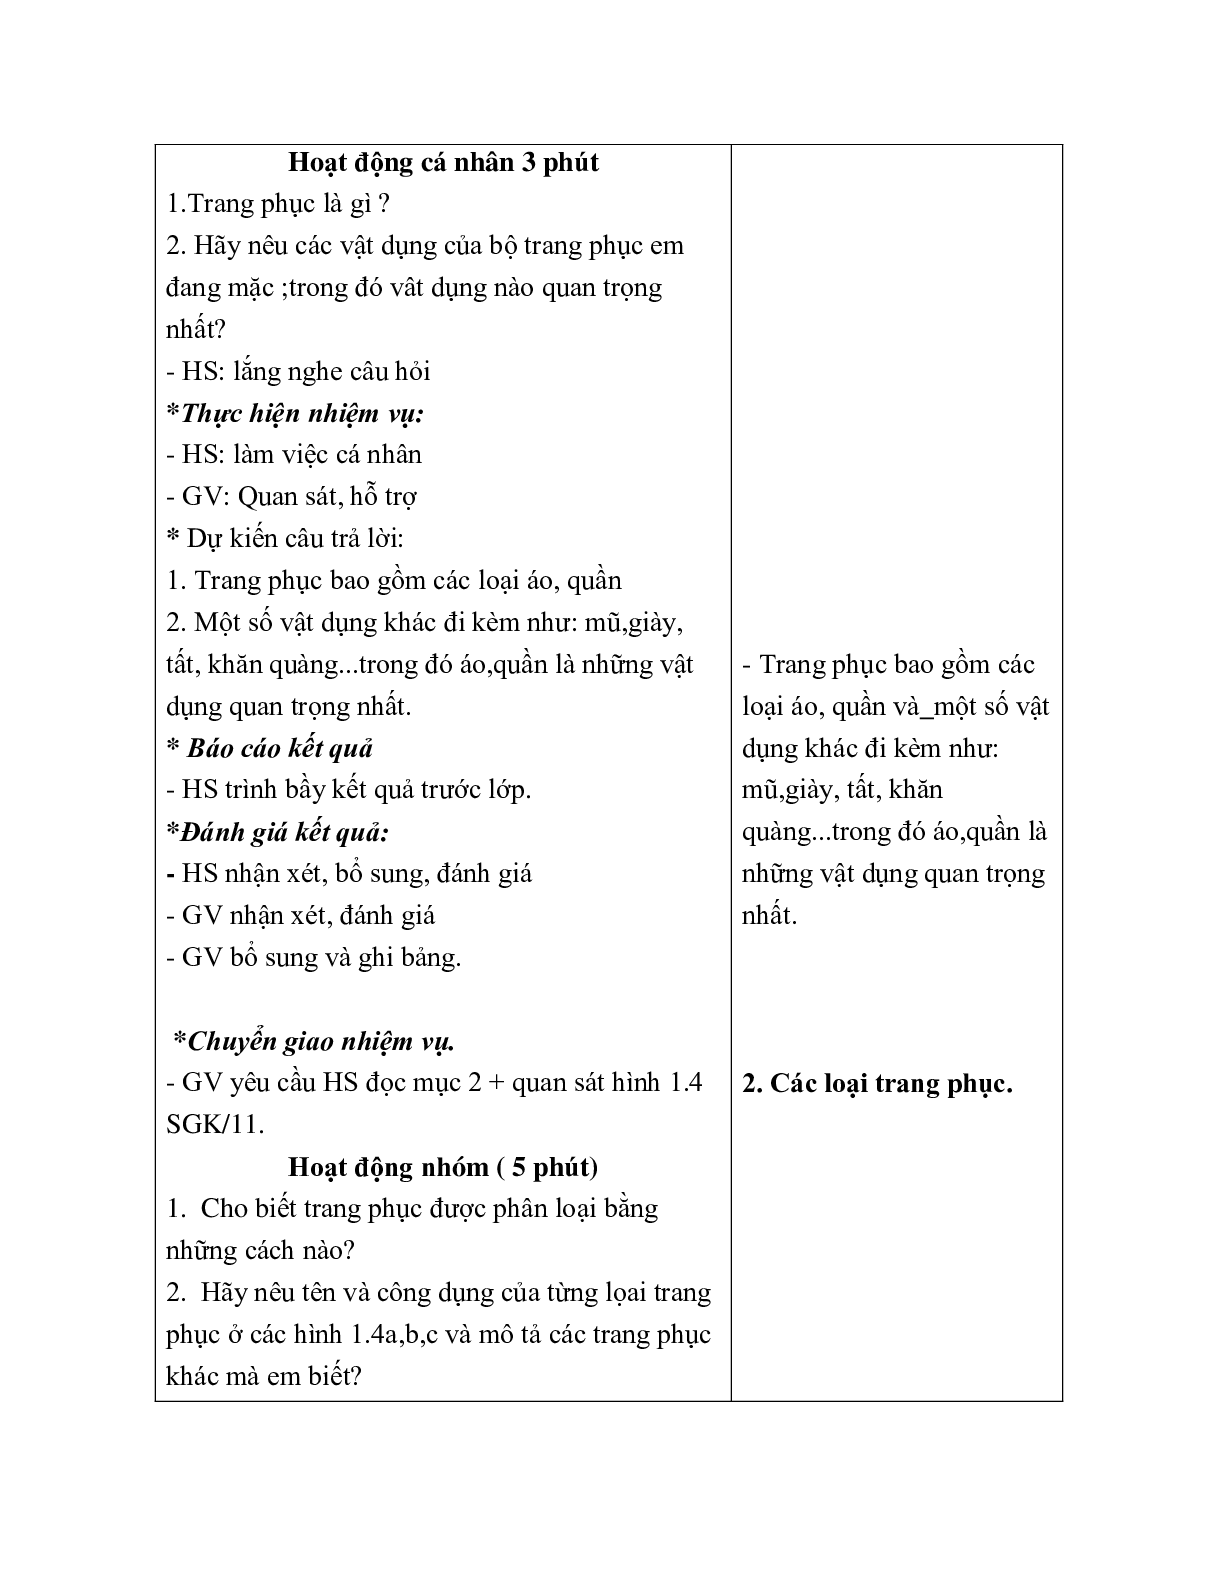 GIÁO ÁN CÔNG NGHỆ 6 BÀI 2: LỰA CHỌN TRANG PHỤC  (T1) MỚI NHẤT (trang 4)